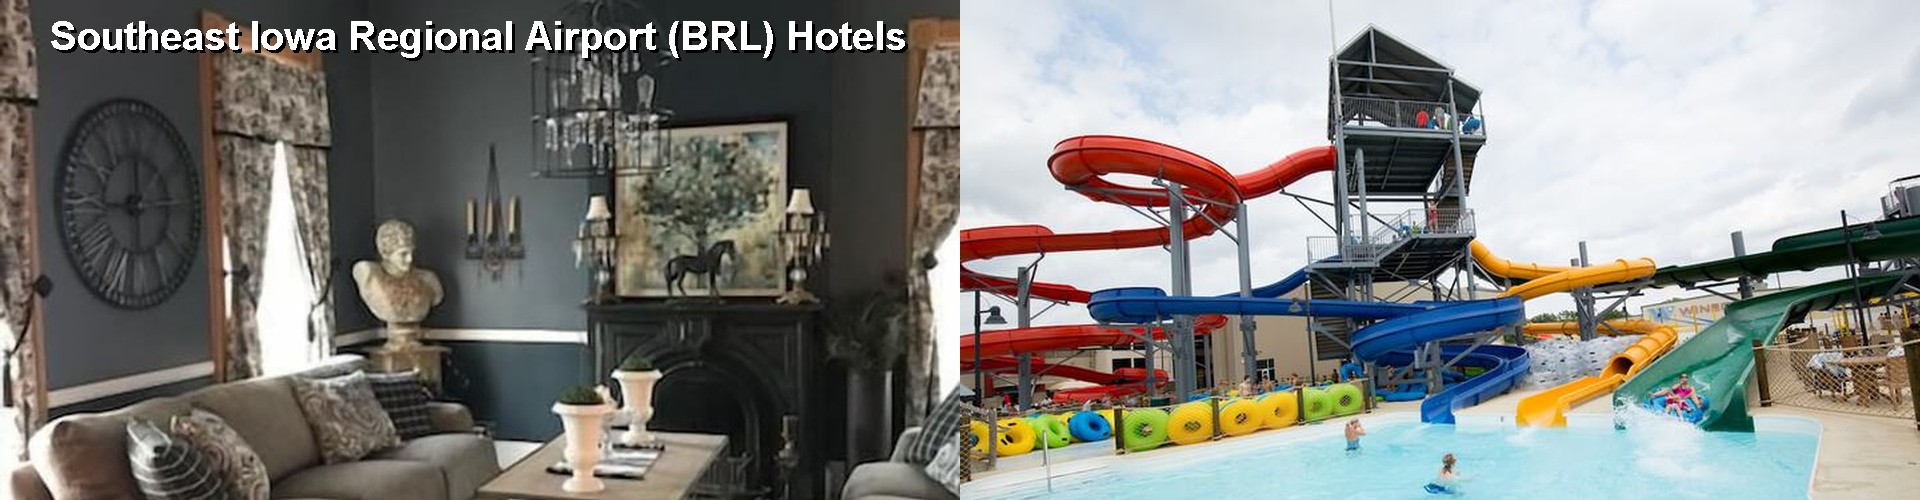 3 Best Hotels near Southeast Iowa Regional Airport (BRL)